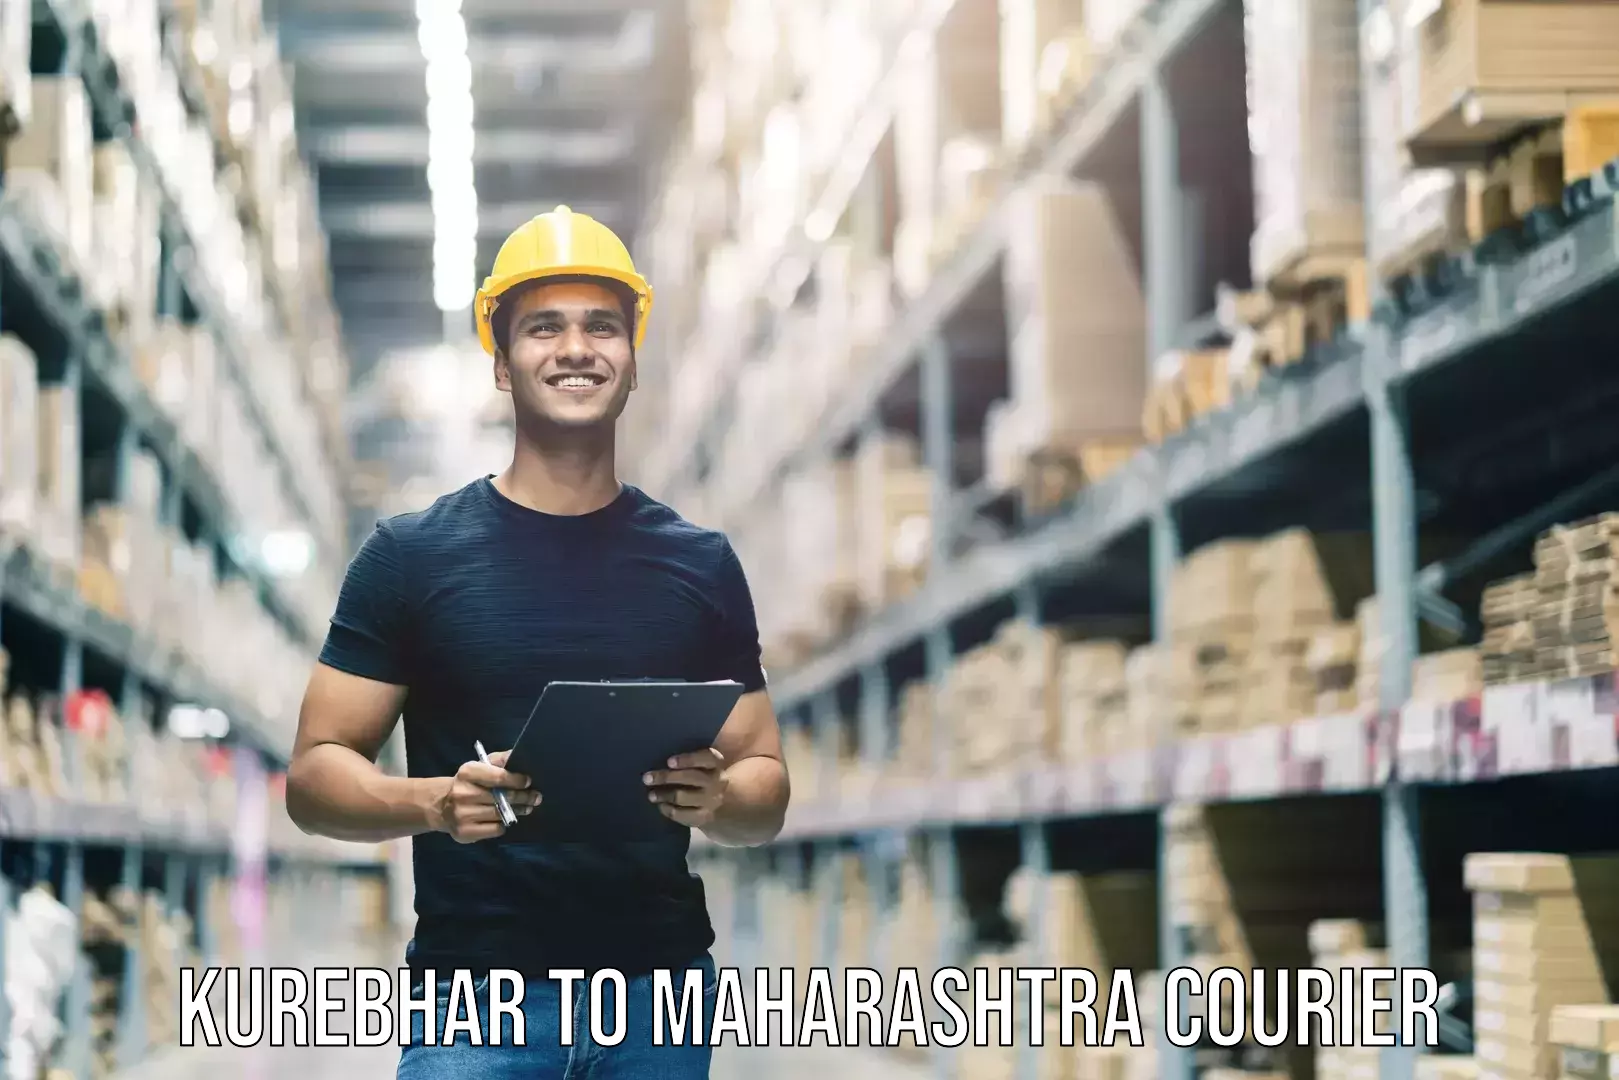 Luggage shipping solutions Kurebhar to Maharashtra